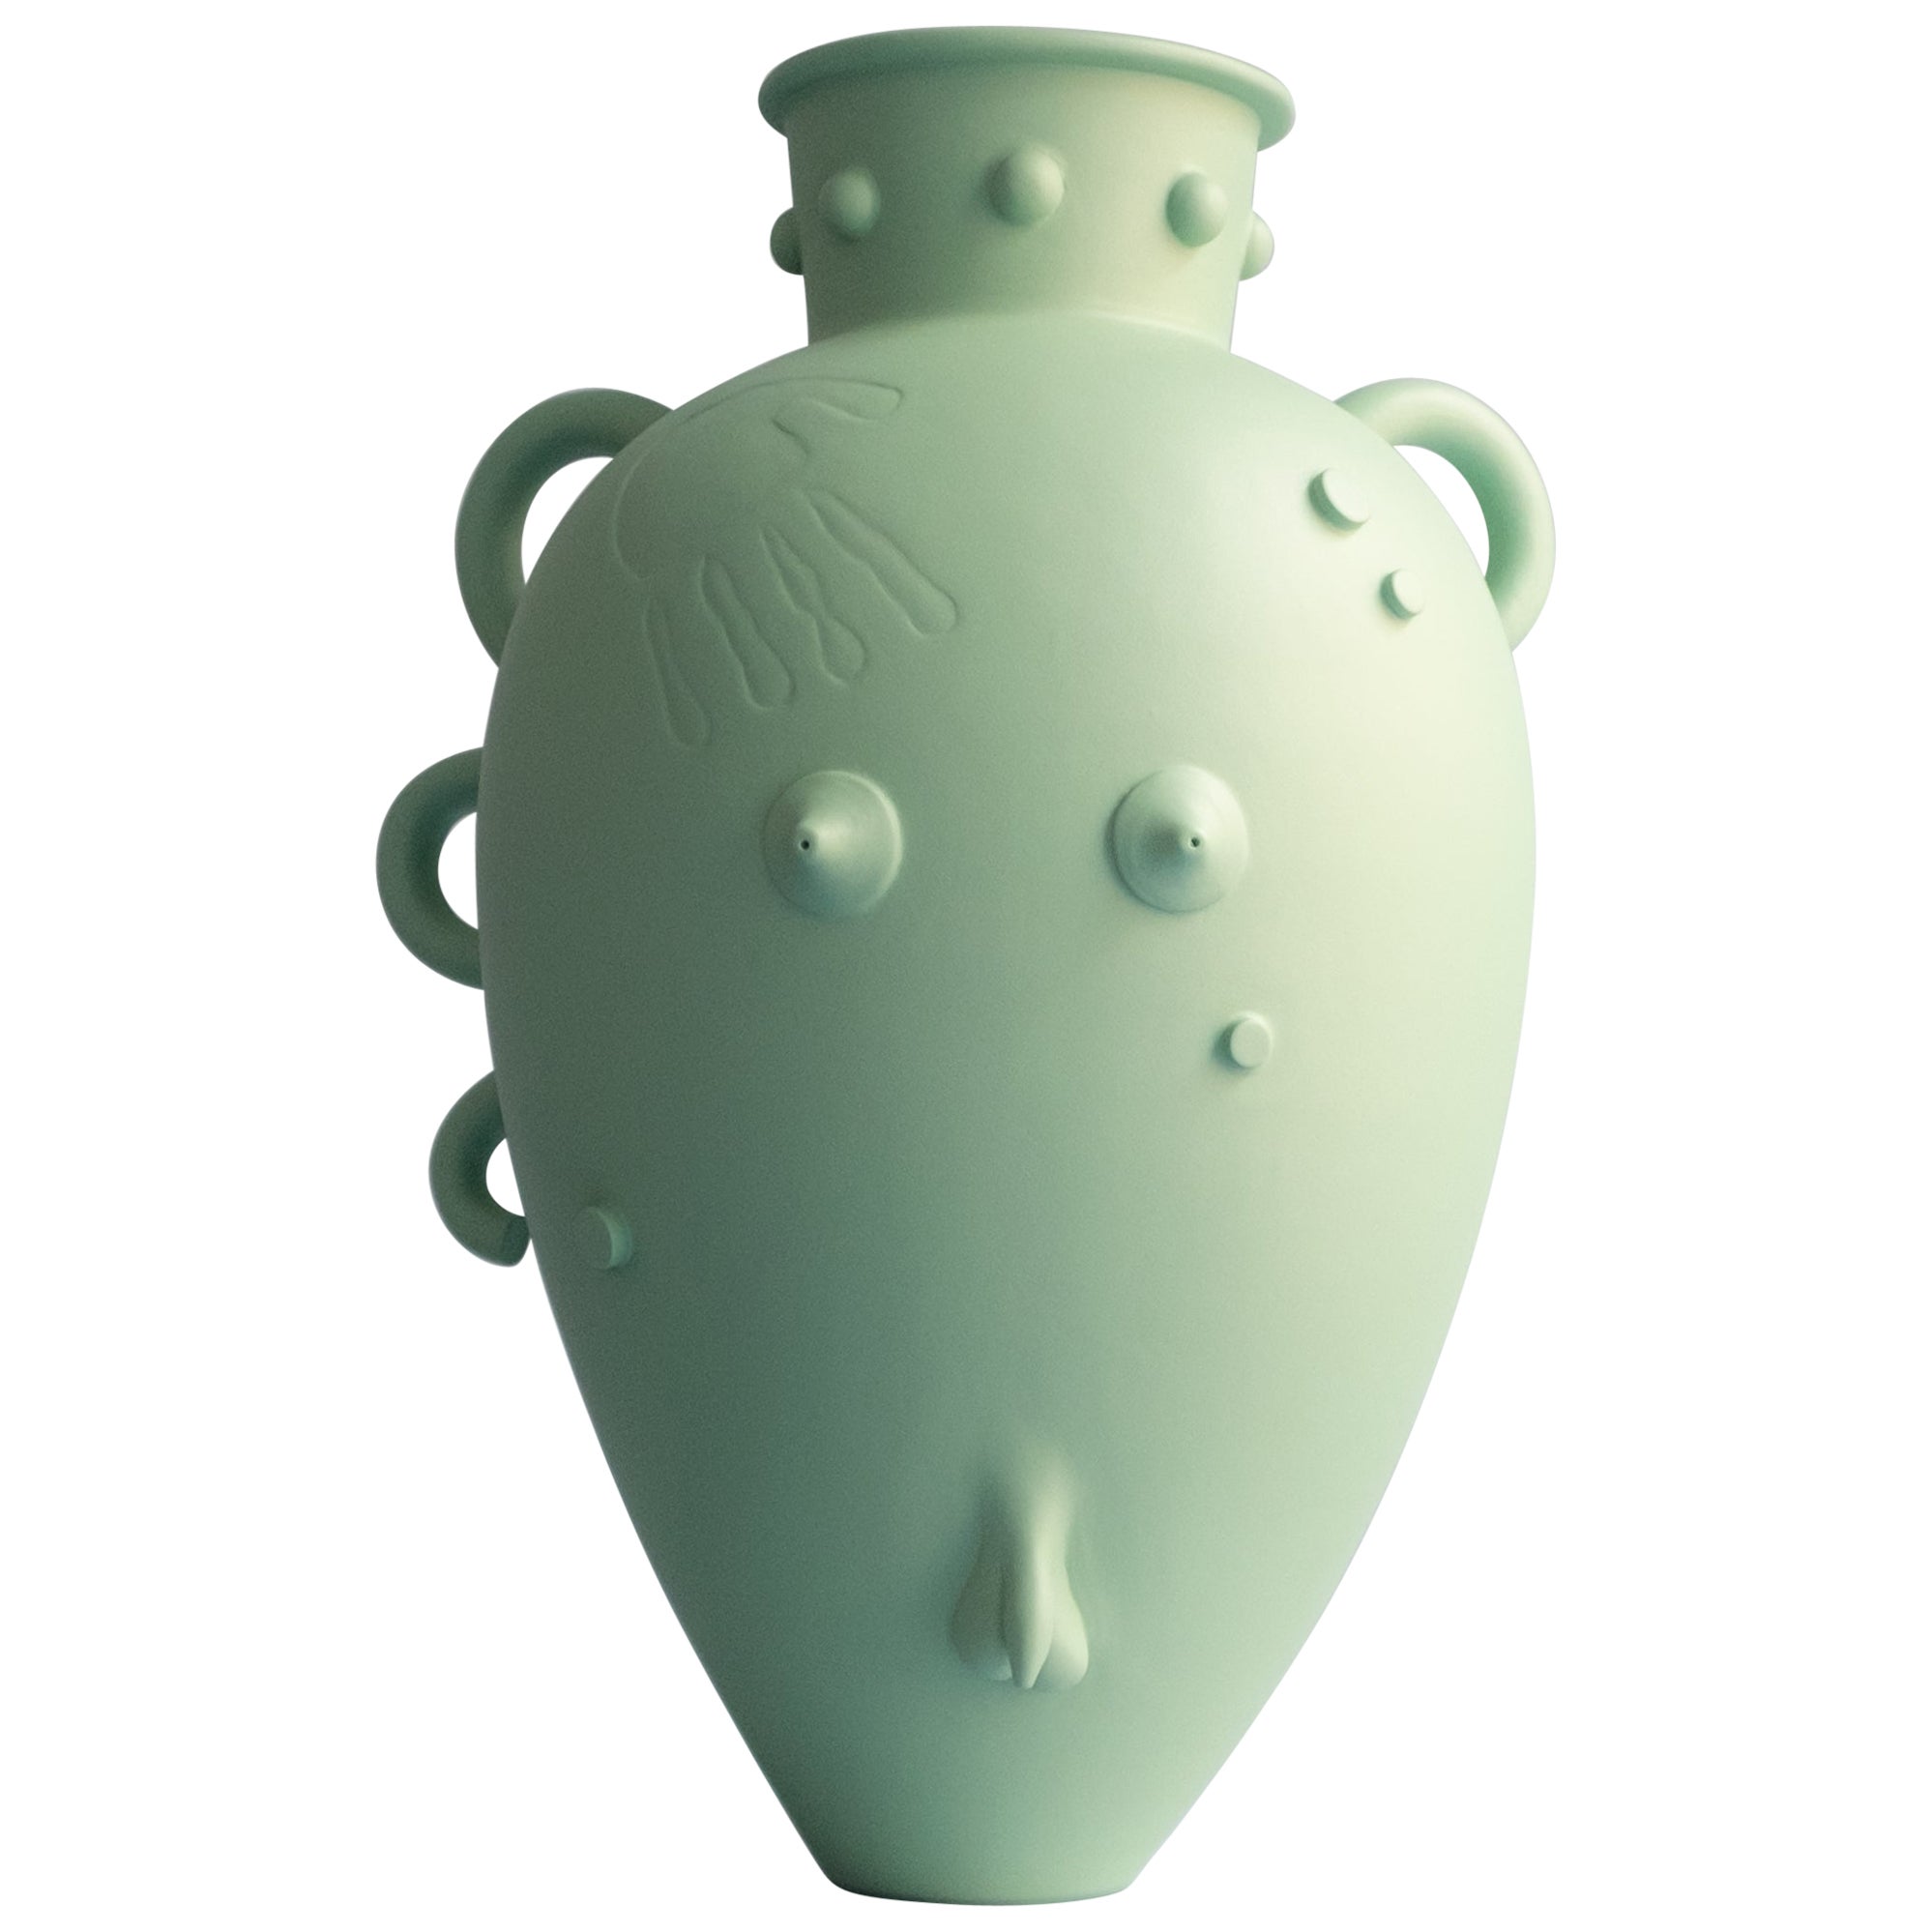 Unique 'Koulis, Eleusis' stoneware vase by Klaus Jurgen Schmidt